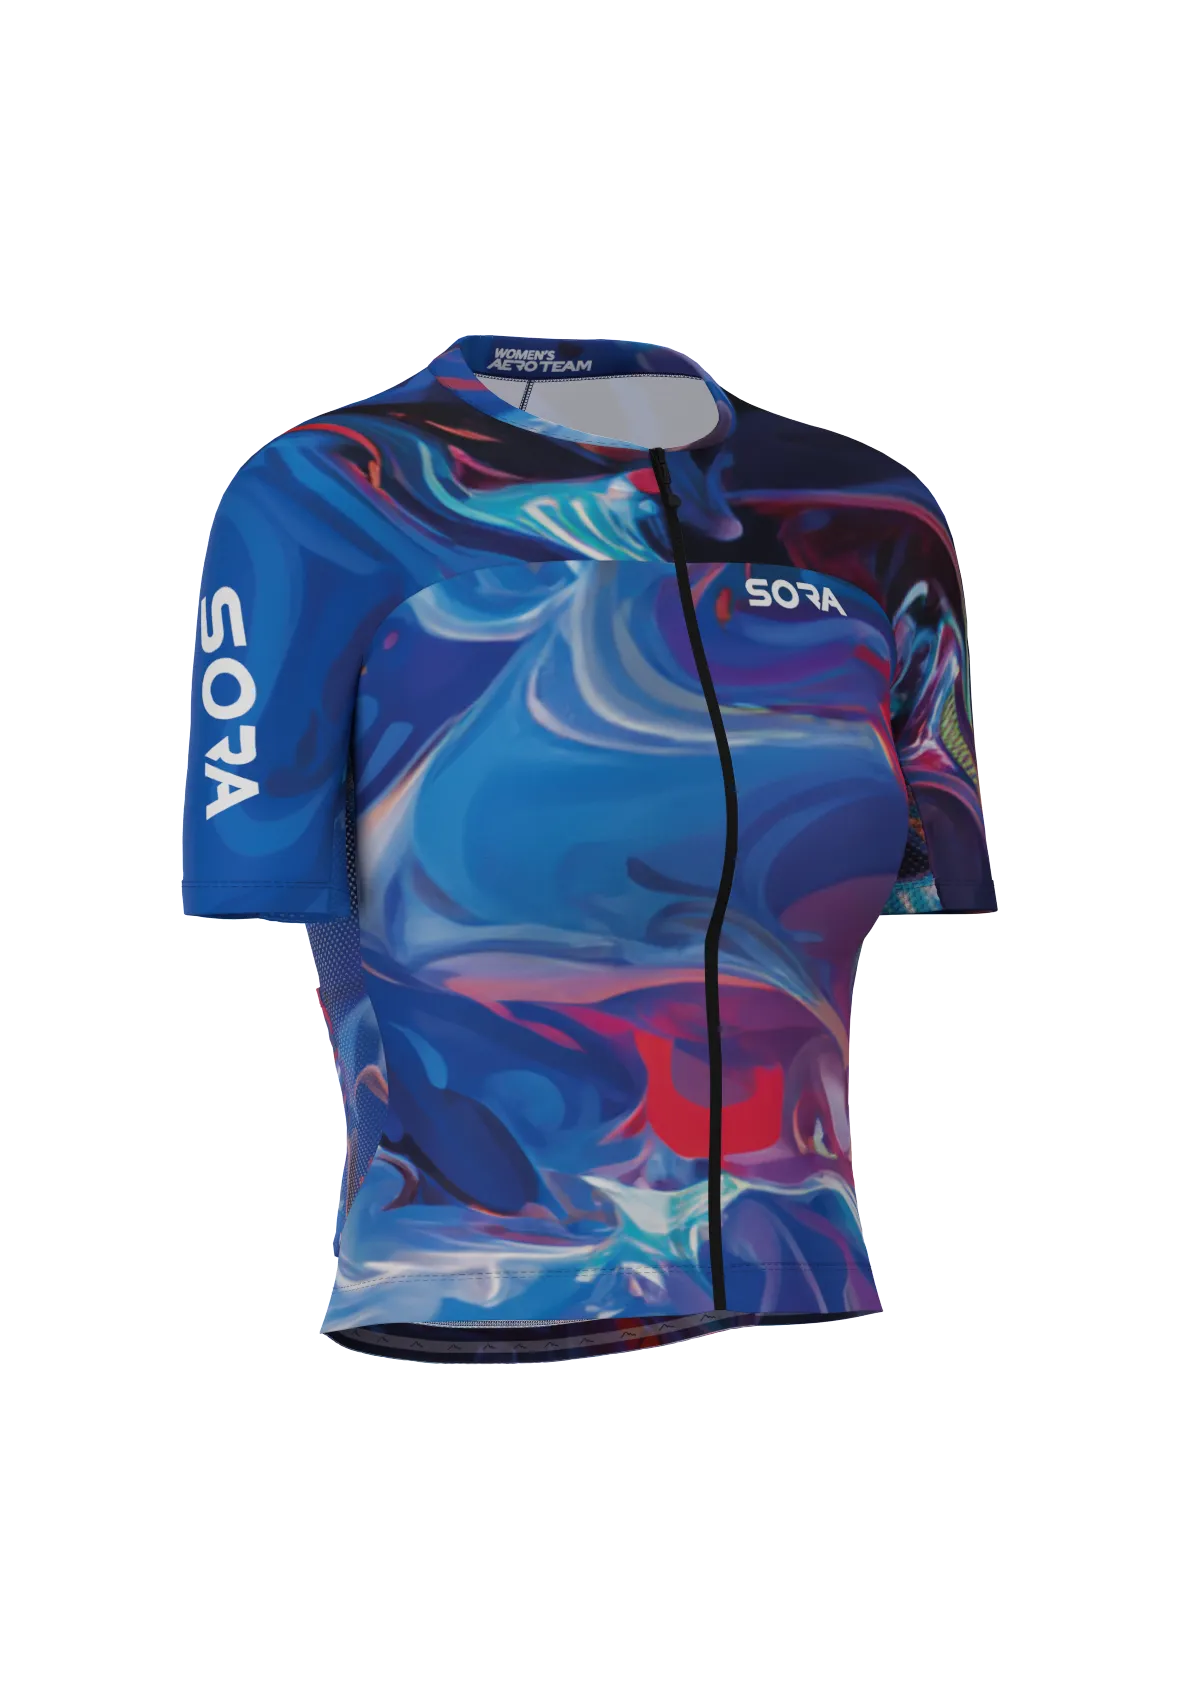 Milieu Aero Team Women's Cycling Jersey